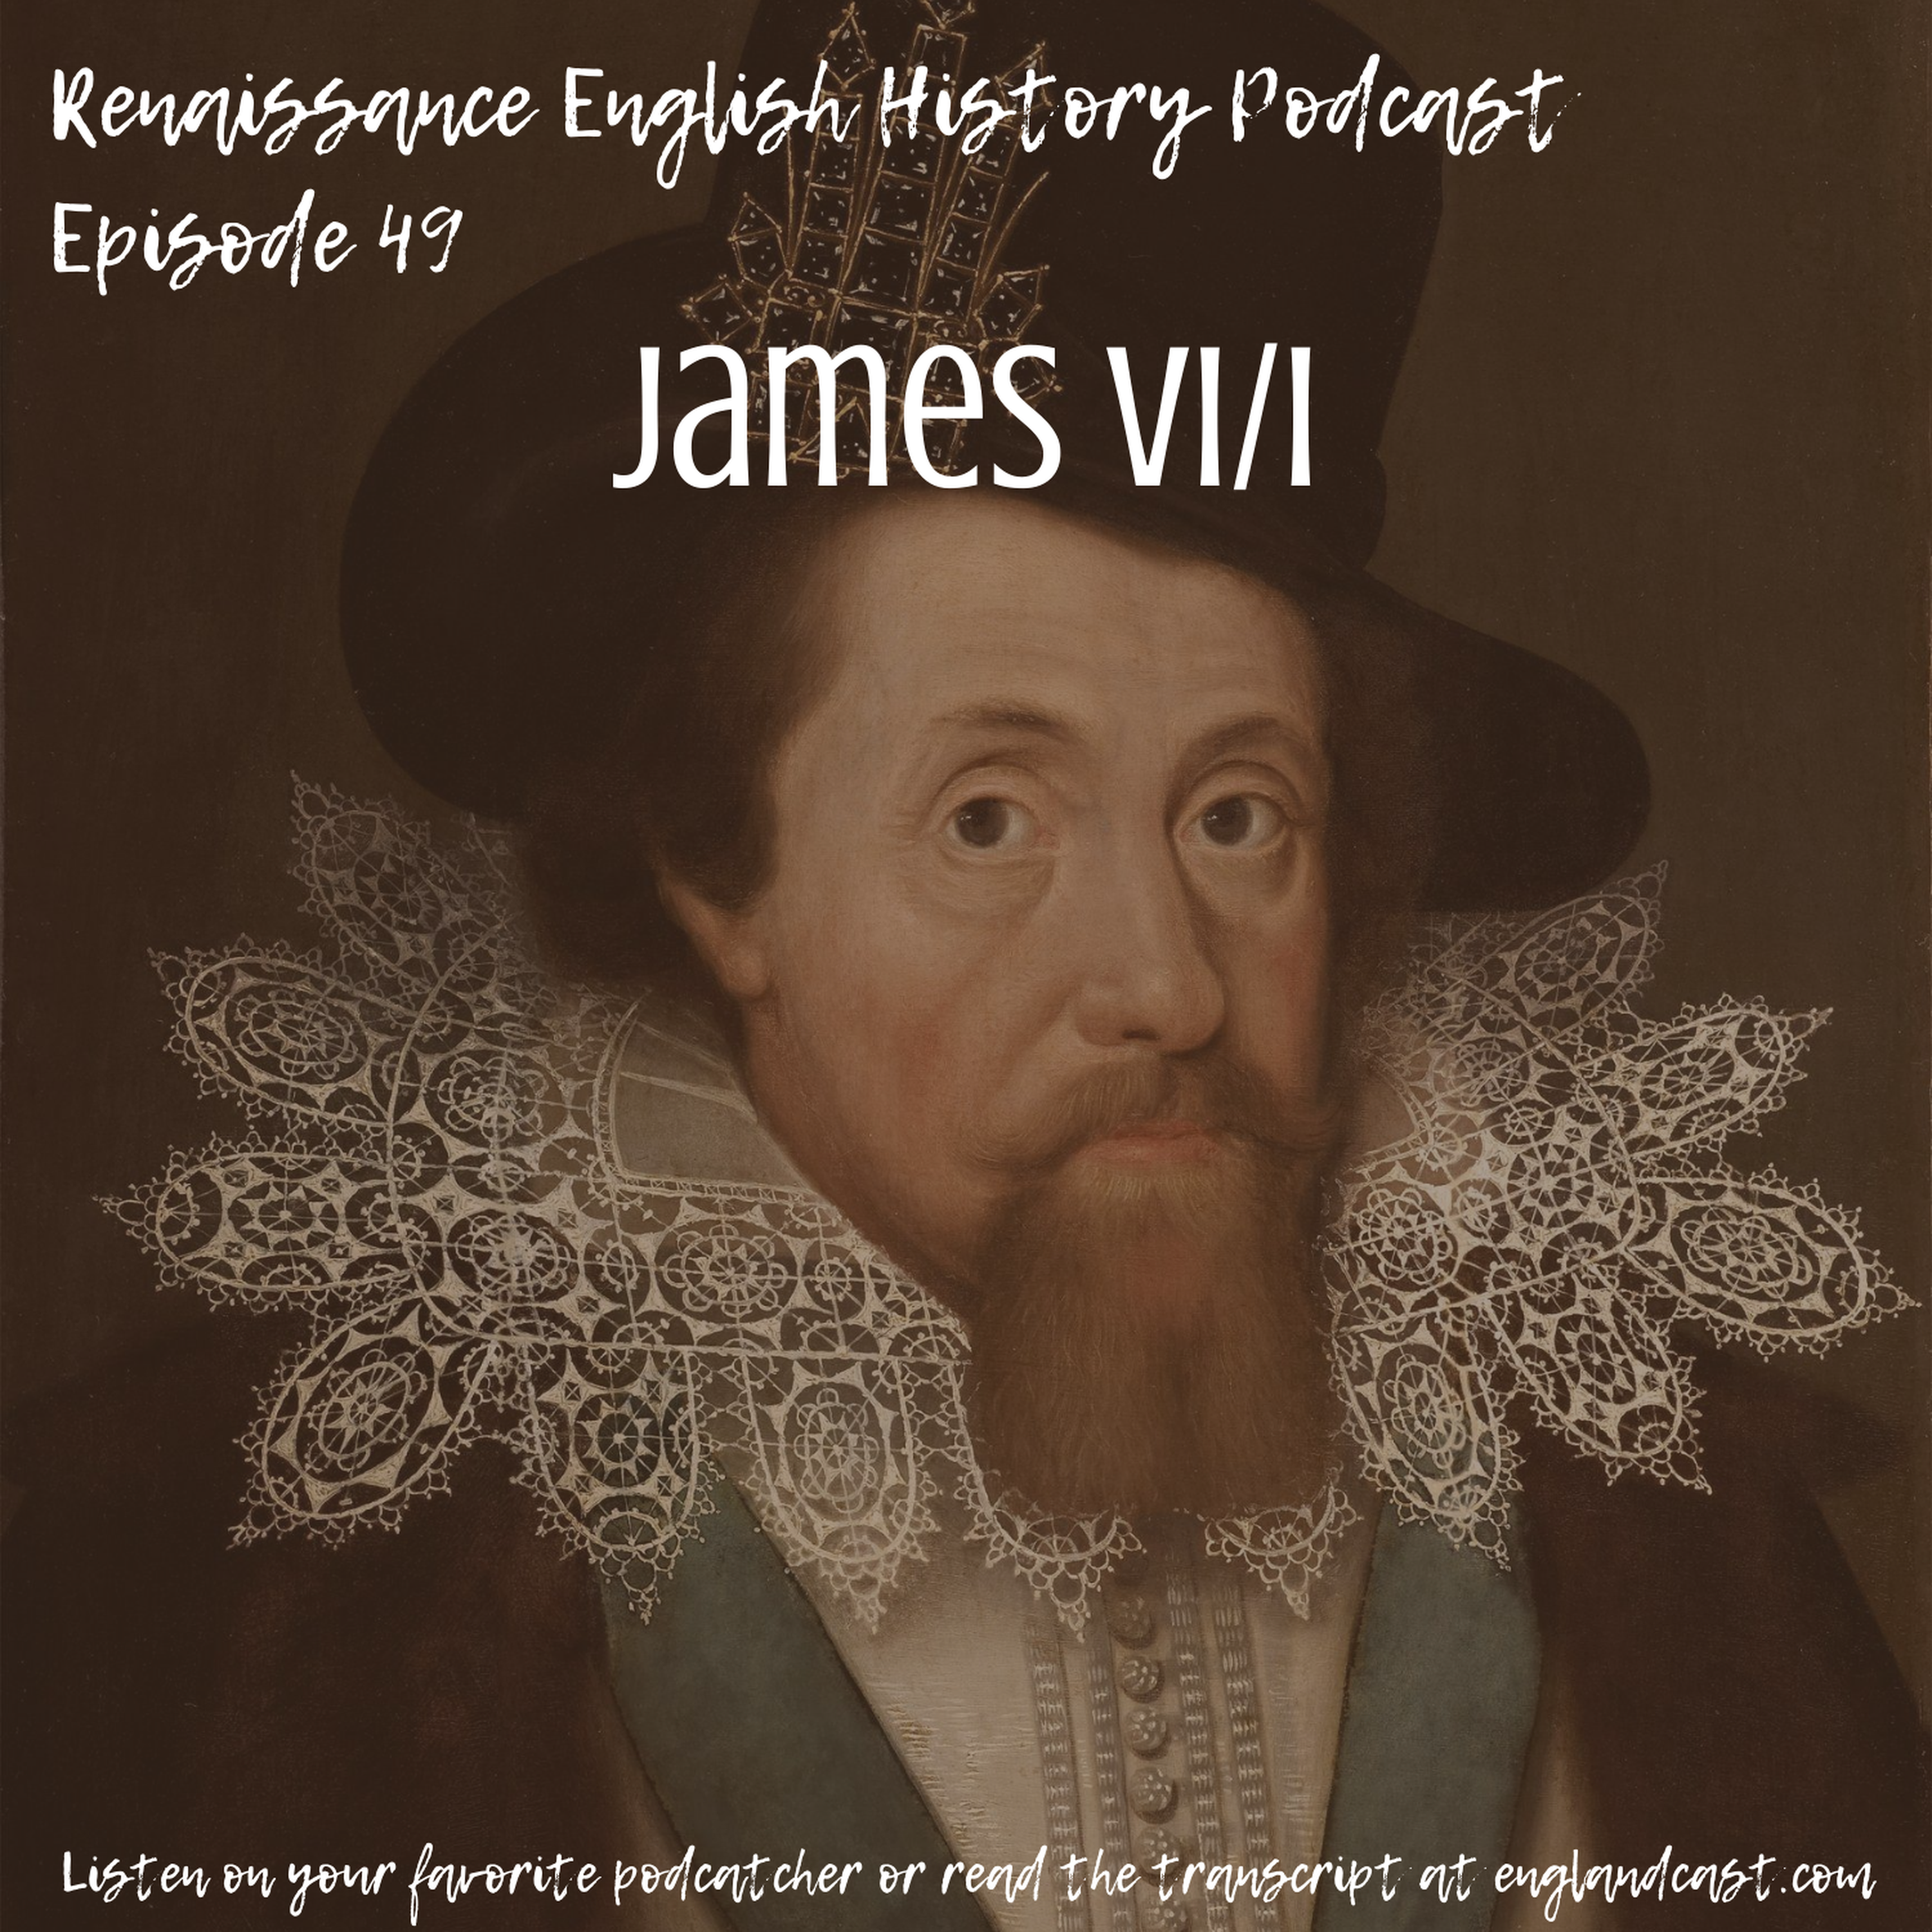 Episode 049: Tudor Times on James I